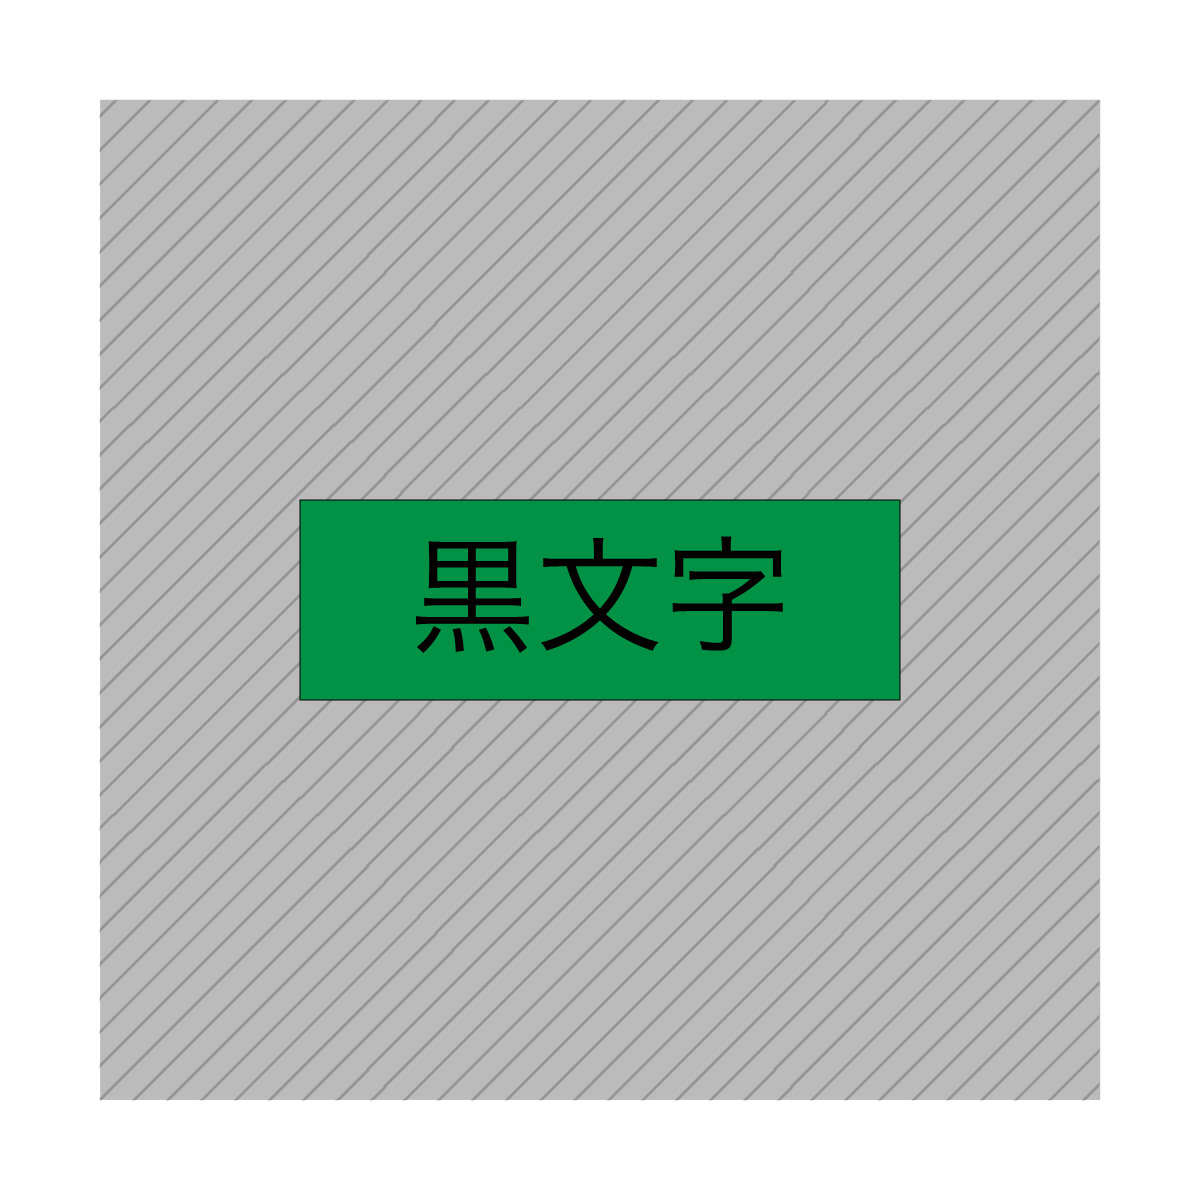 6mm キングジム用 テプラPRO互換 緑テープ 黒文字 テプラテープ テープカートリッジ 互換品 SC6G 長さが8M 強粘着版 ;E-(5);_画像2